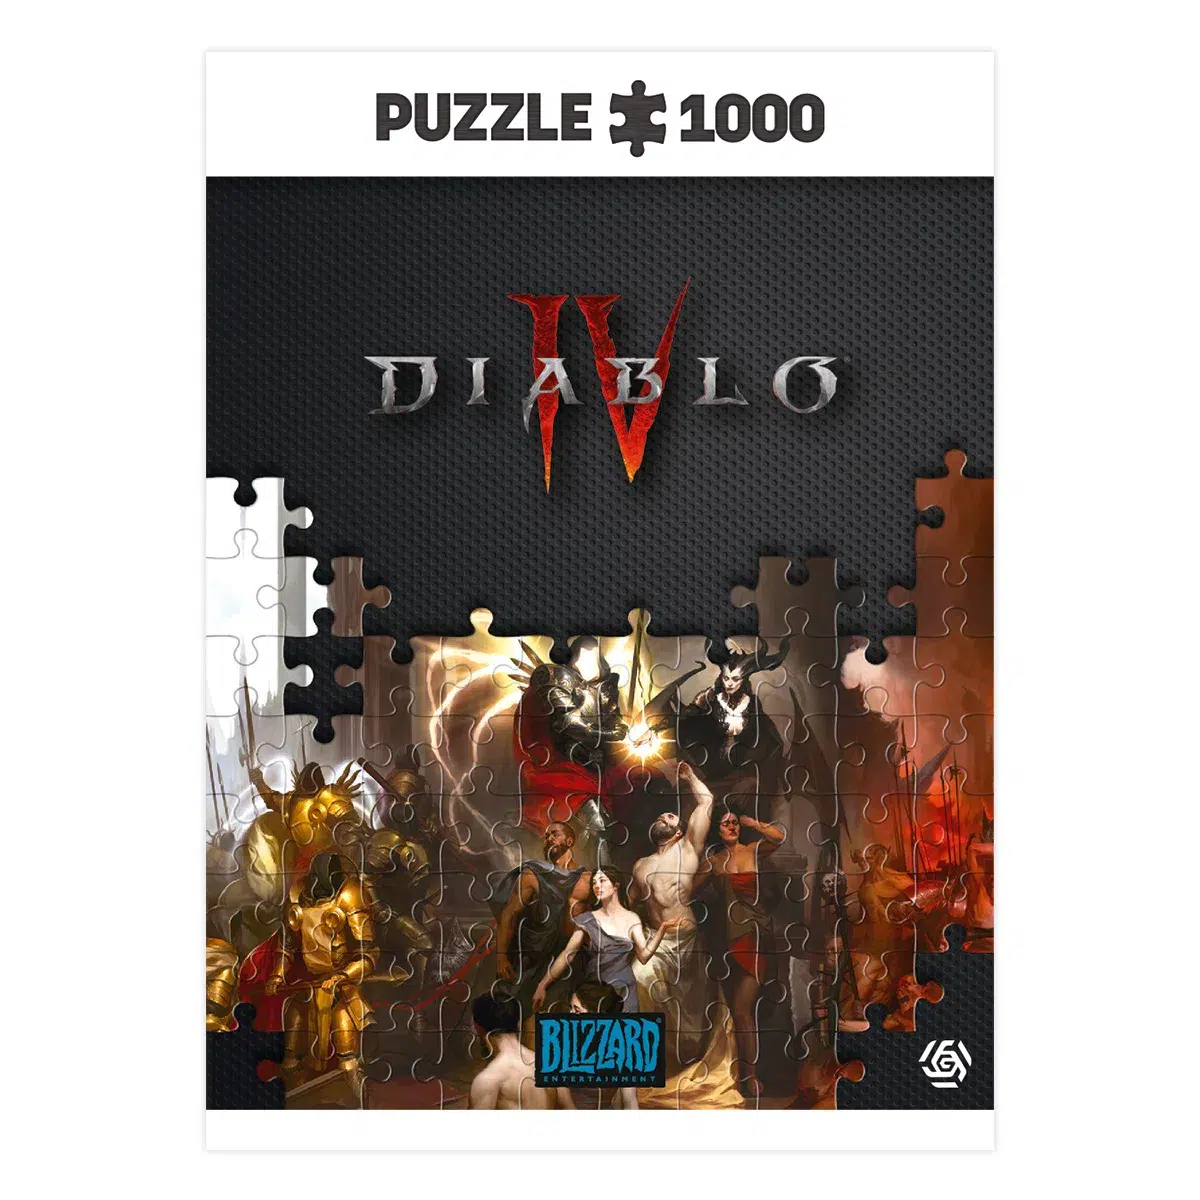 Diablo IV Puzzle "Birth of Nephilim" (1000 pcs)